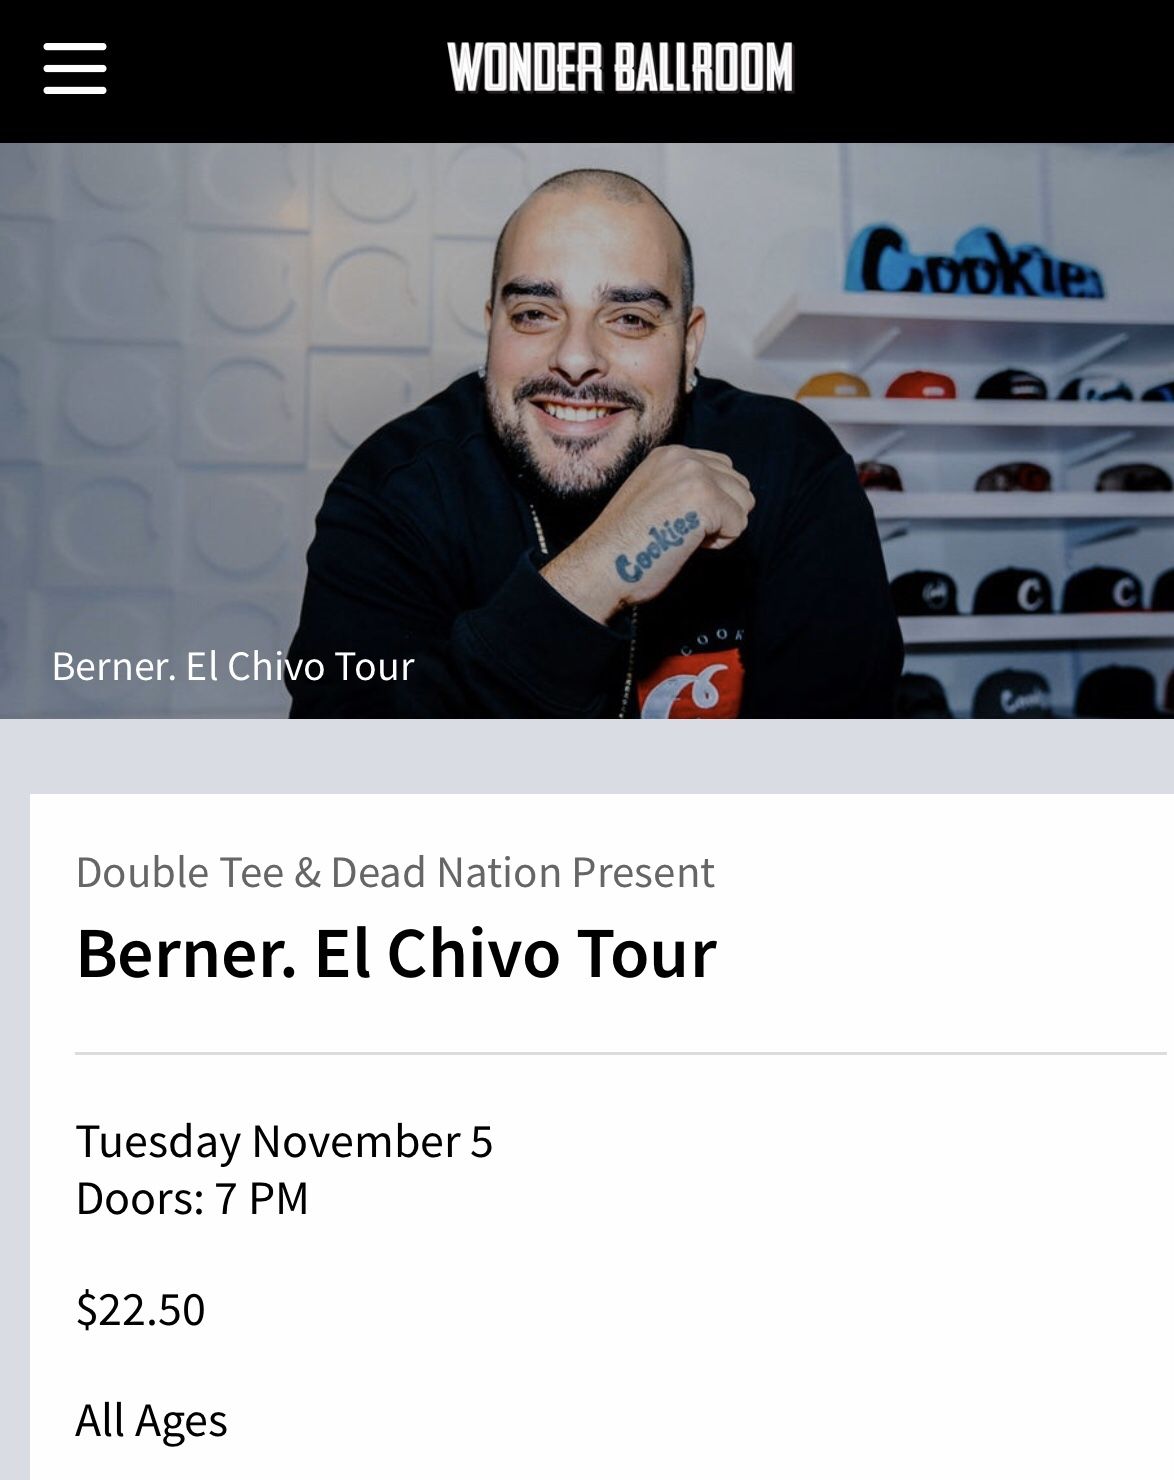 Berner- EL Chivo Tickets 11/05 at Wonder Ballroom Portland